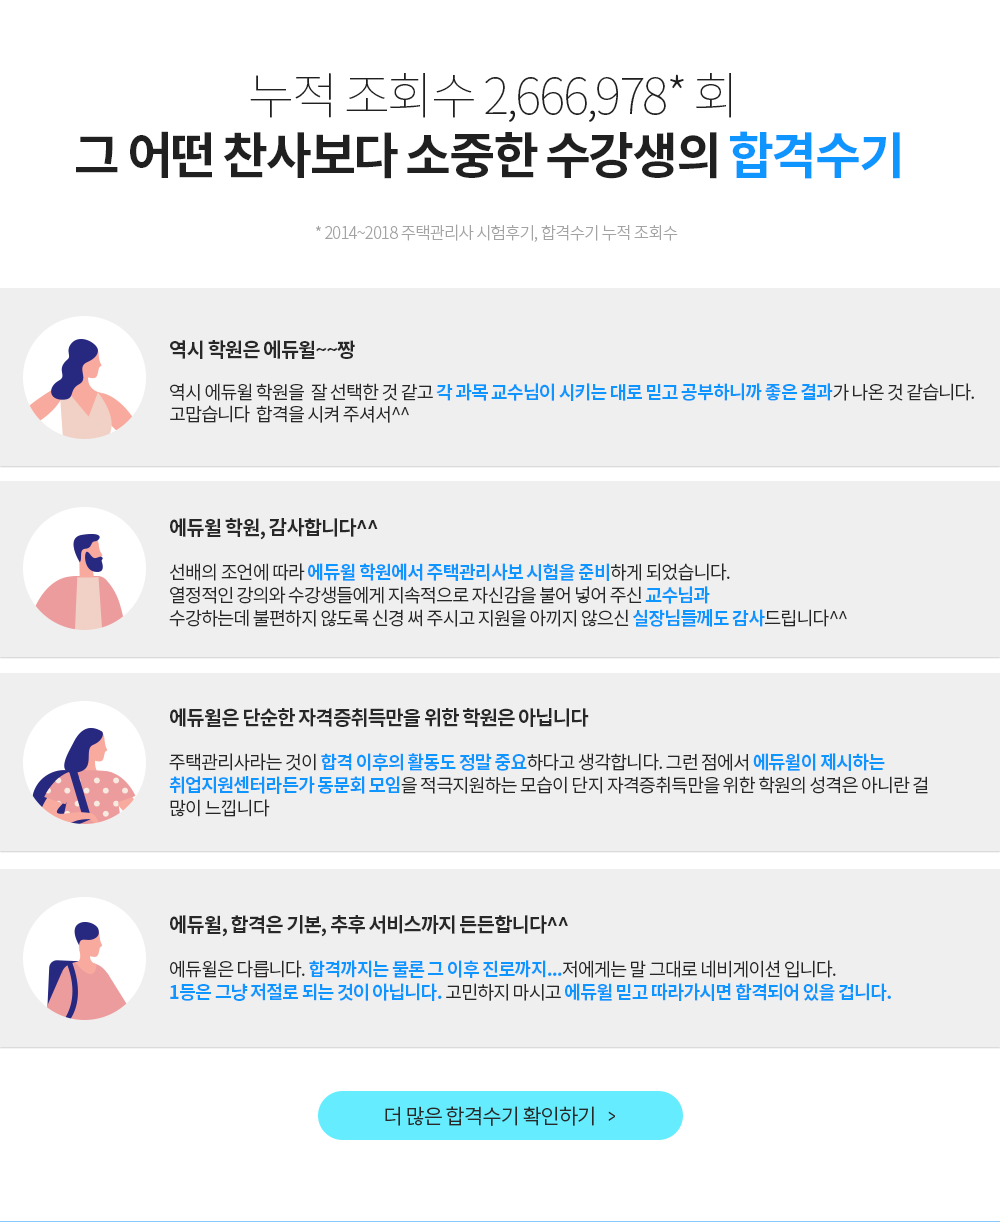 결과로 증명하는 합격력 에듀윌 수강생들의 합격 수기